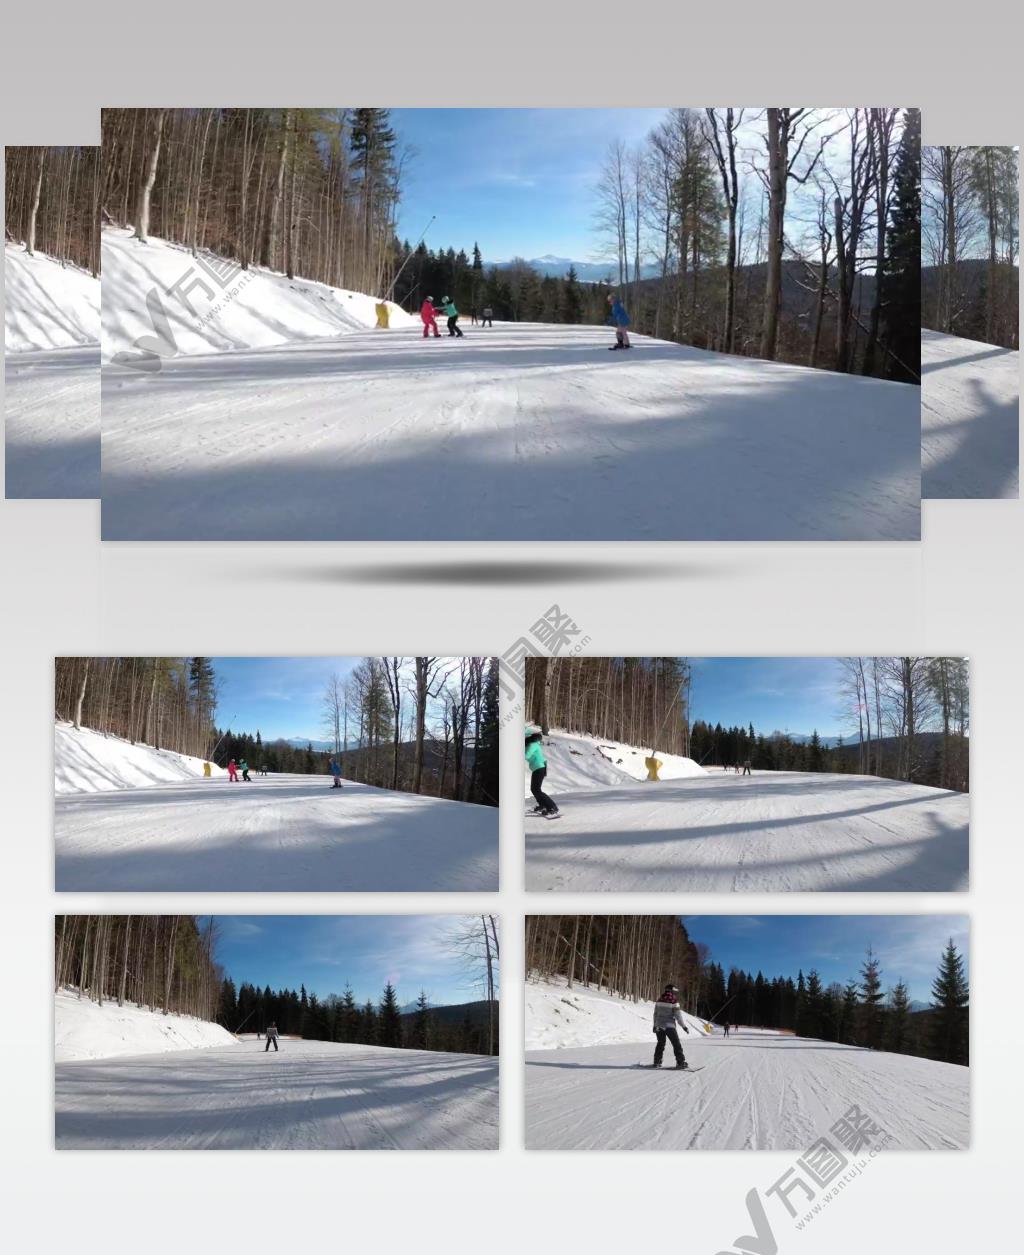 沿着山上的滑雪道滑雪运动实拍视频